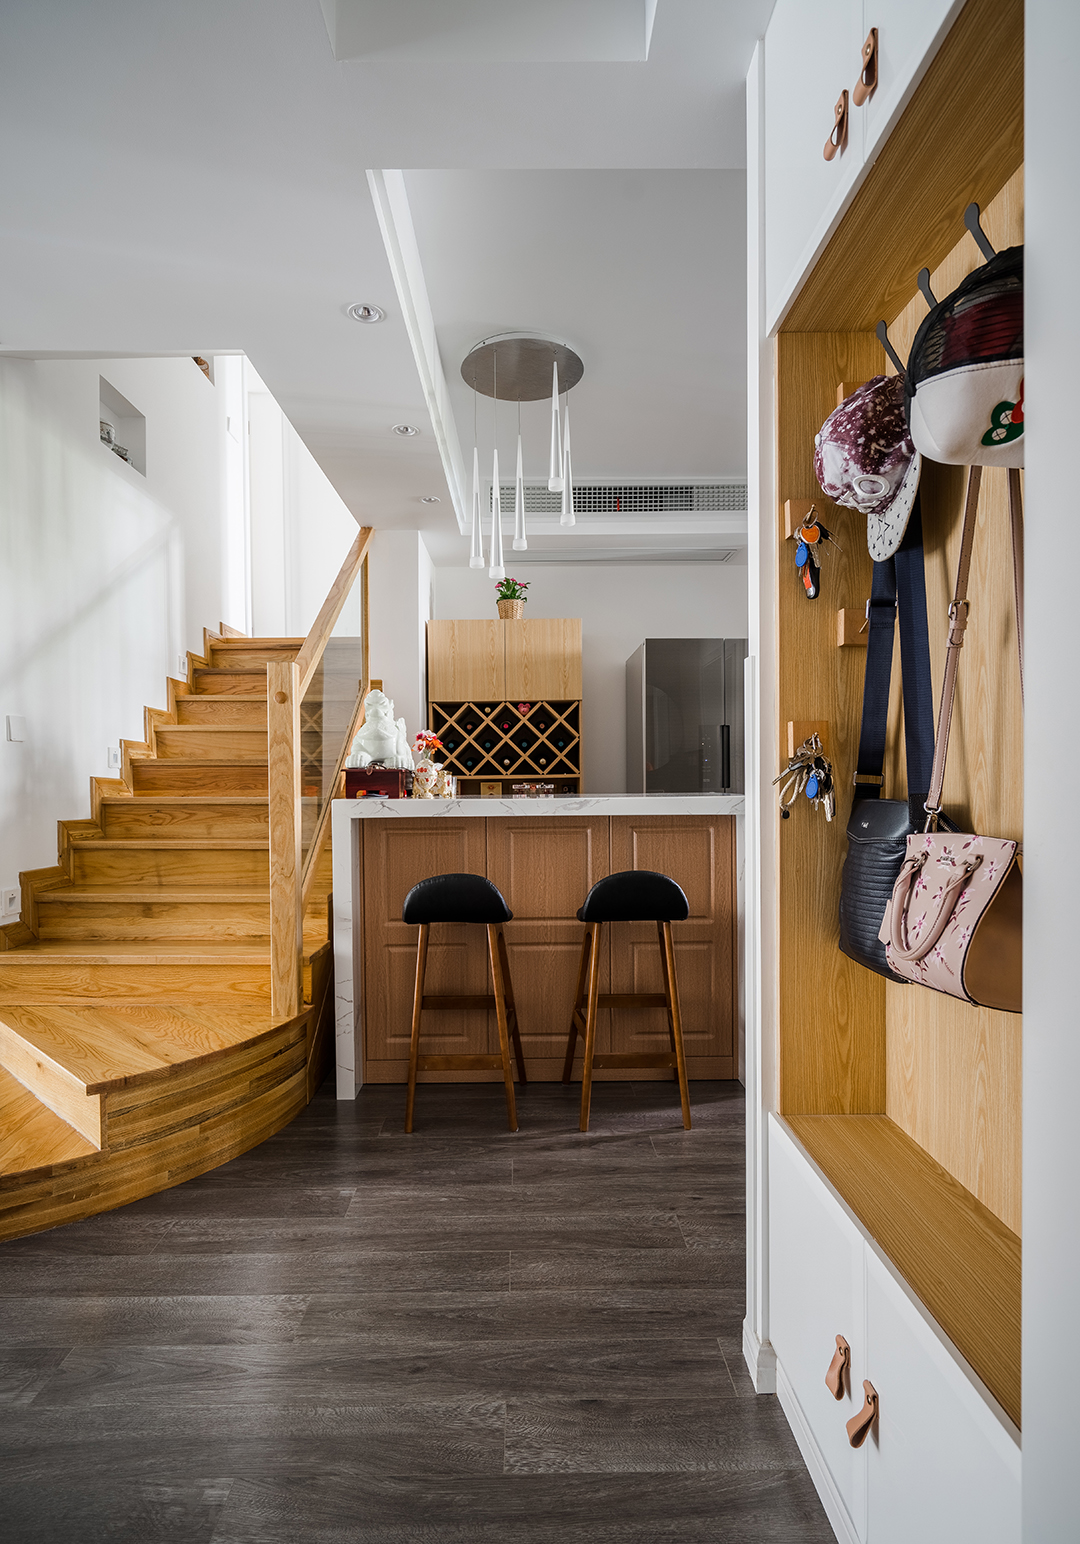 空间中摆放的设计单品家具，都在大气尺度的舒适慵懒中散发着一种不言而喻的时尚感，木质地板，木饰面搭配出暖居格调。
